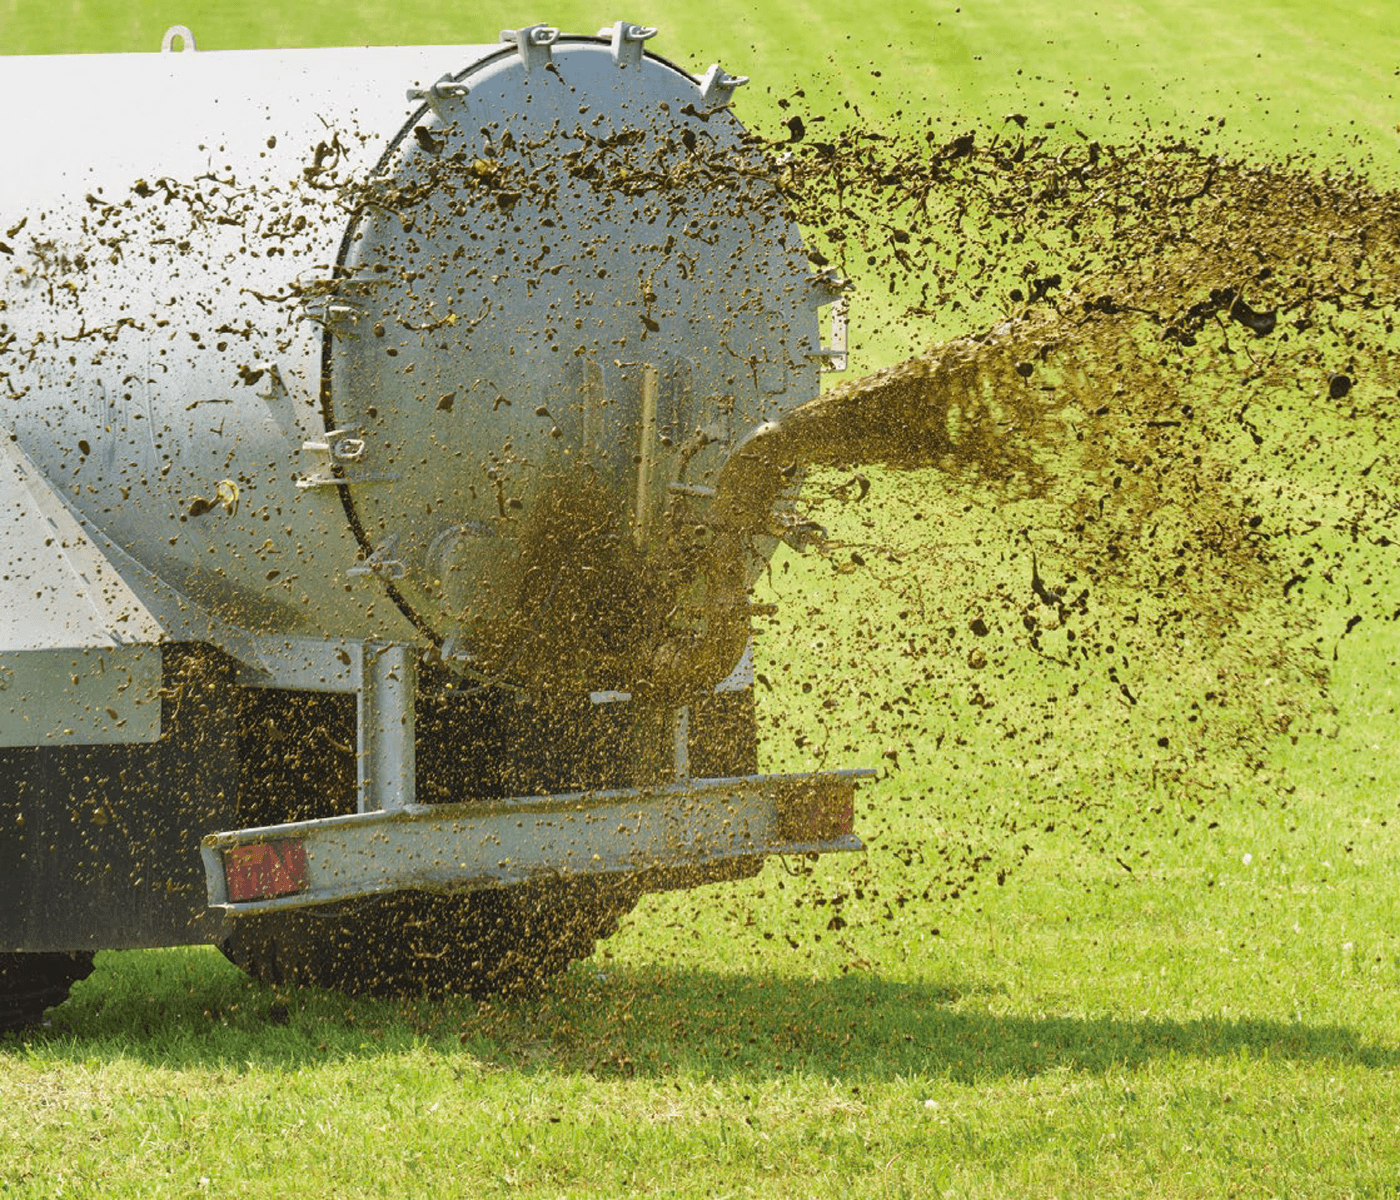 ¿Precios de los fertilizantes disparados? – La solución está a tu alcance